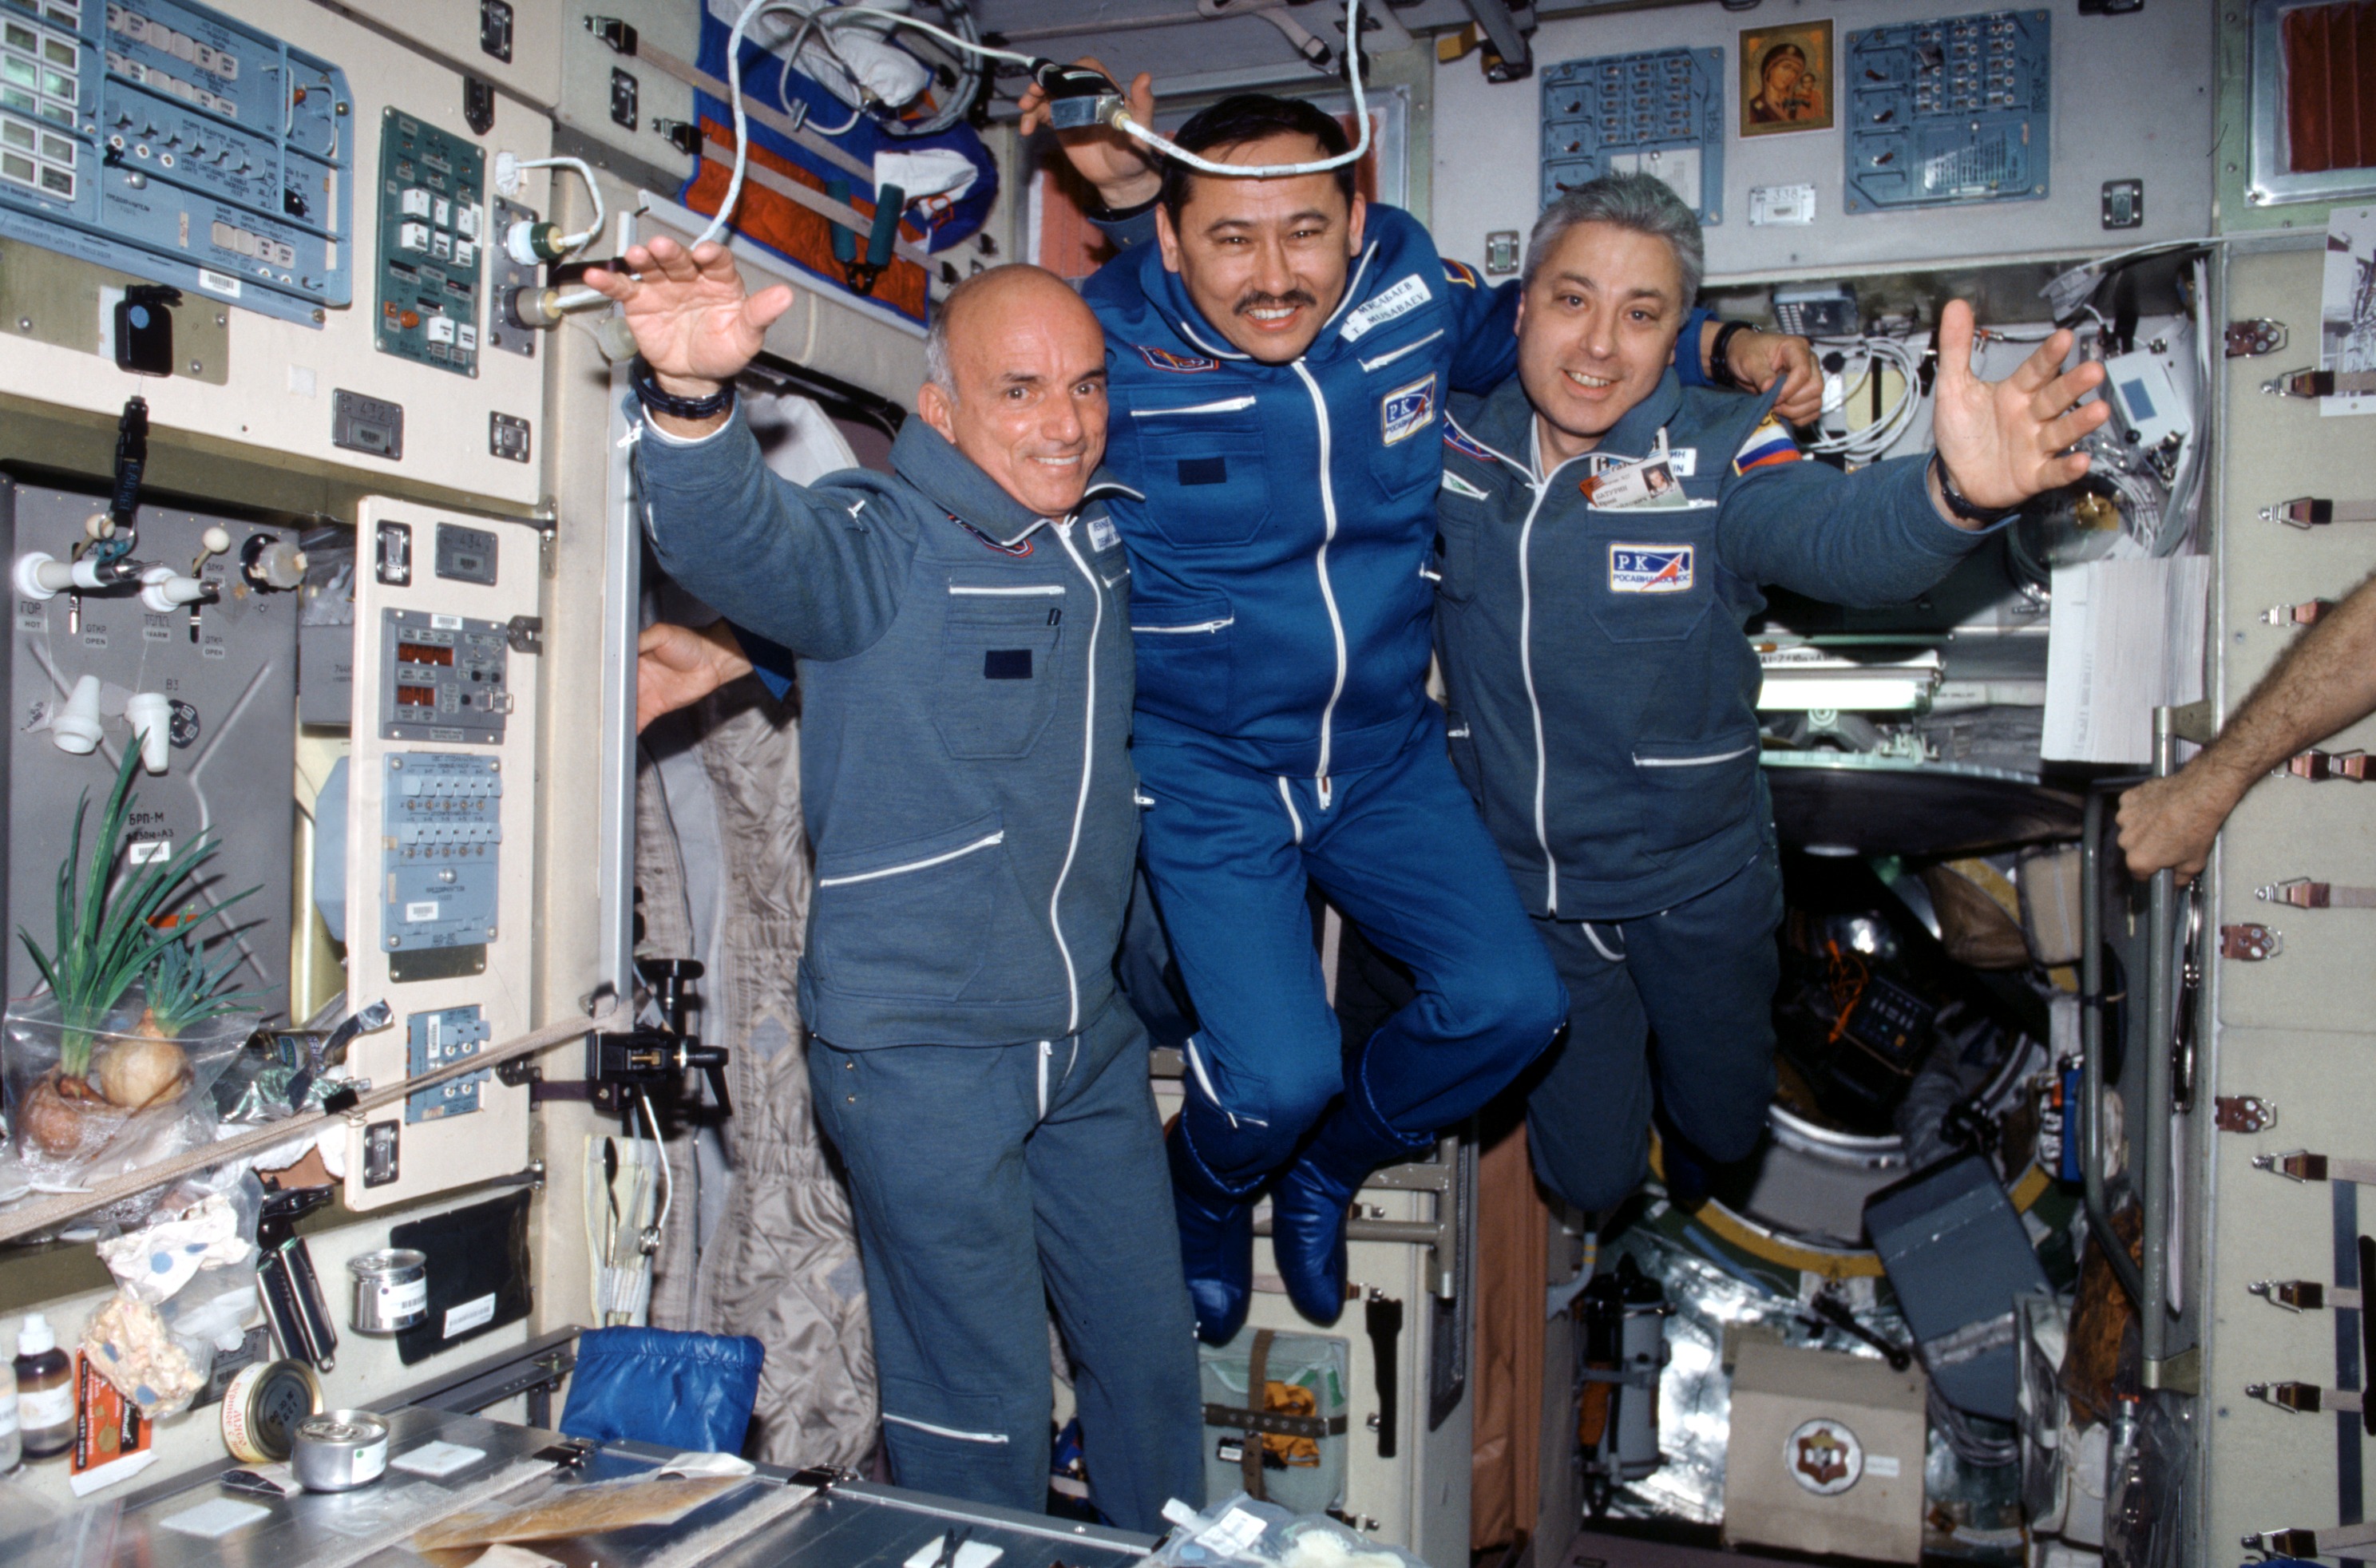 Первый космический корабль вышедший в космос. Деннис Тито космический турист. Первый турист в космосе Деннис Тито.